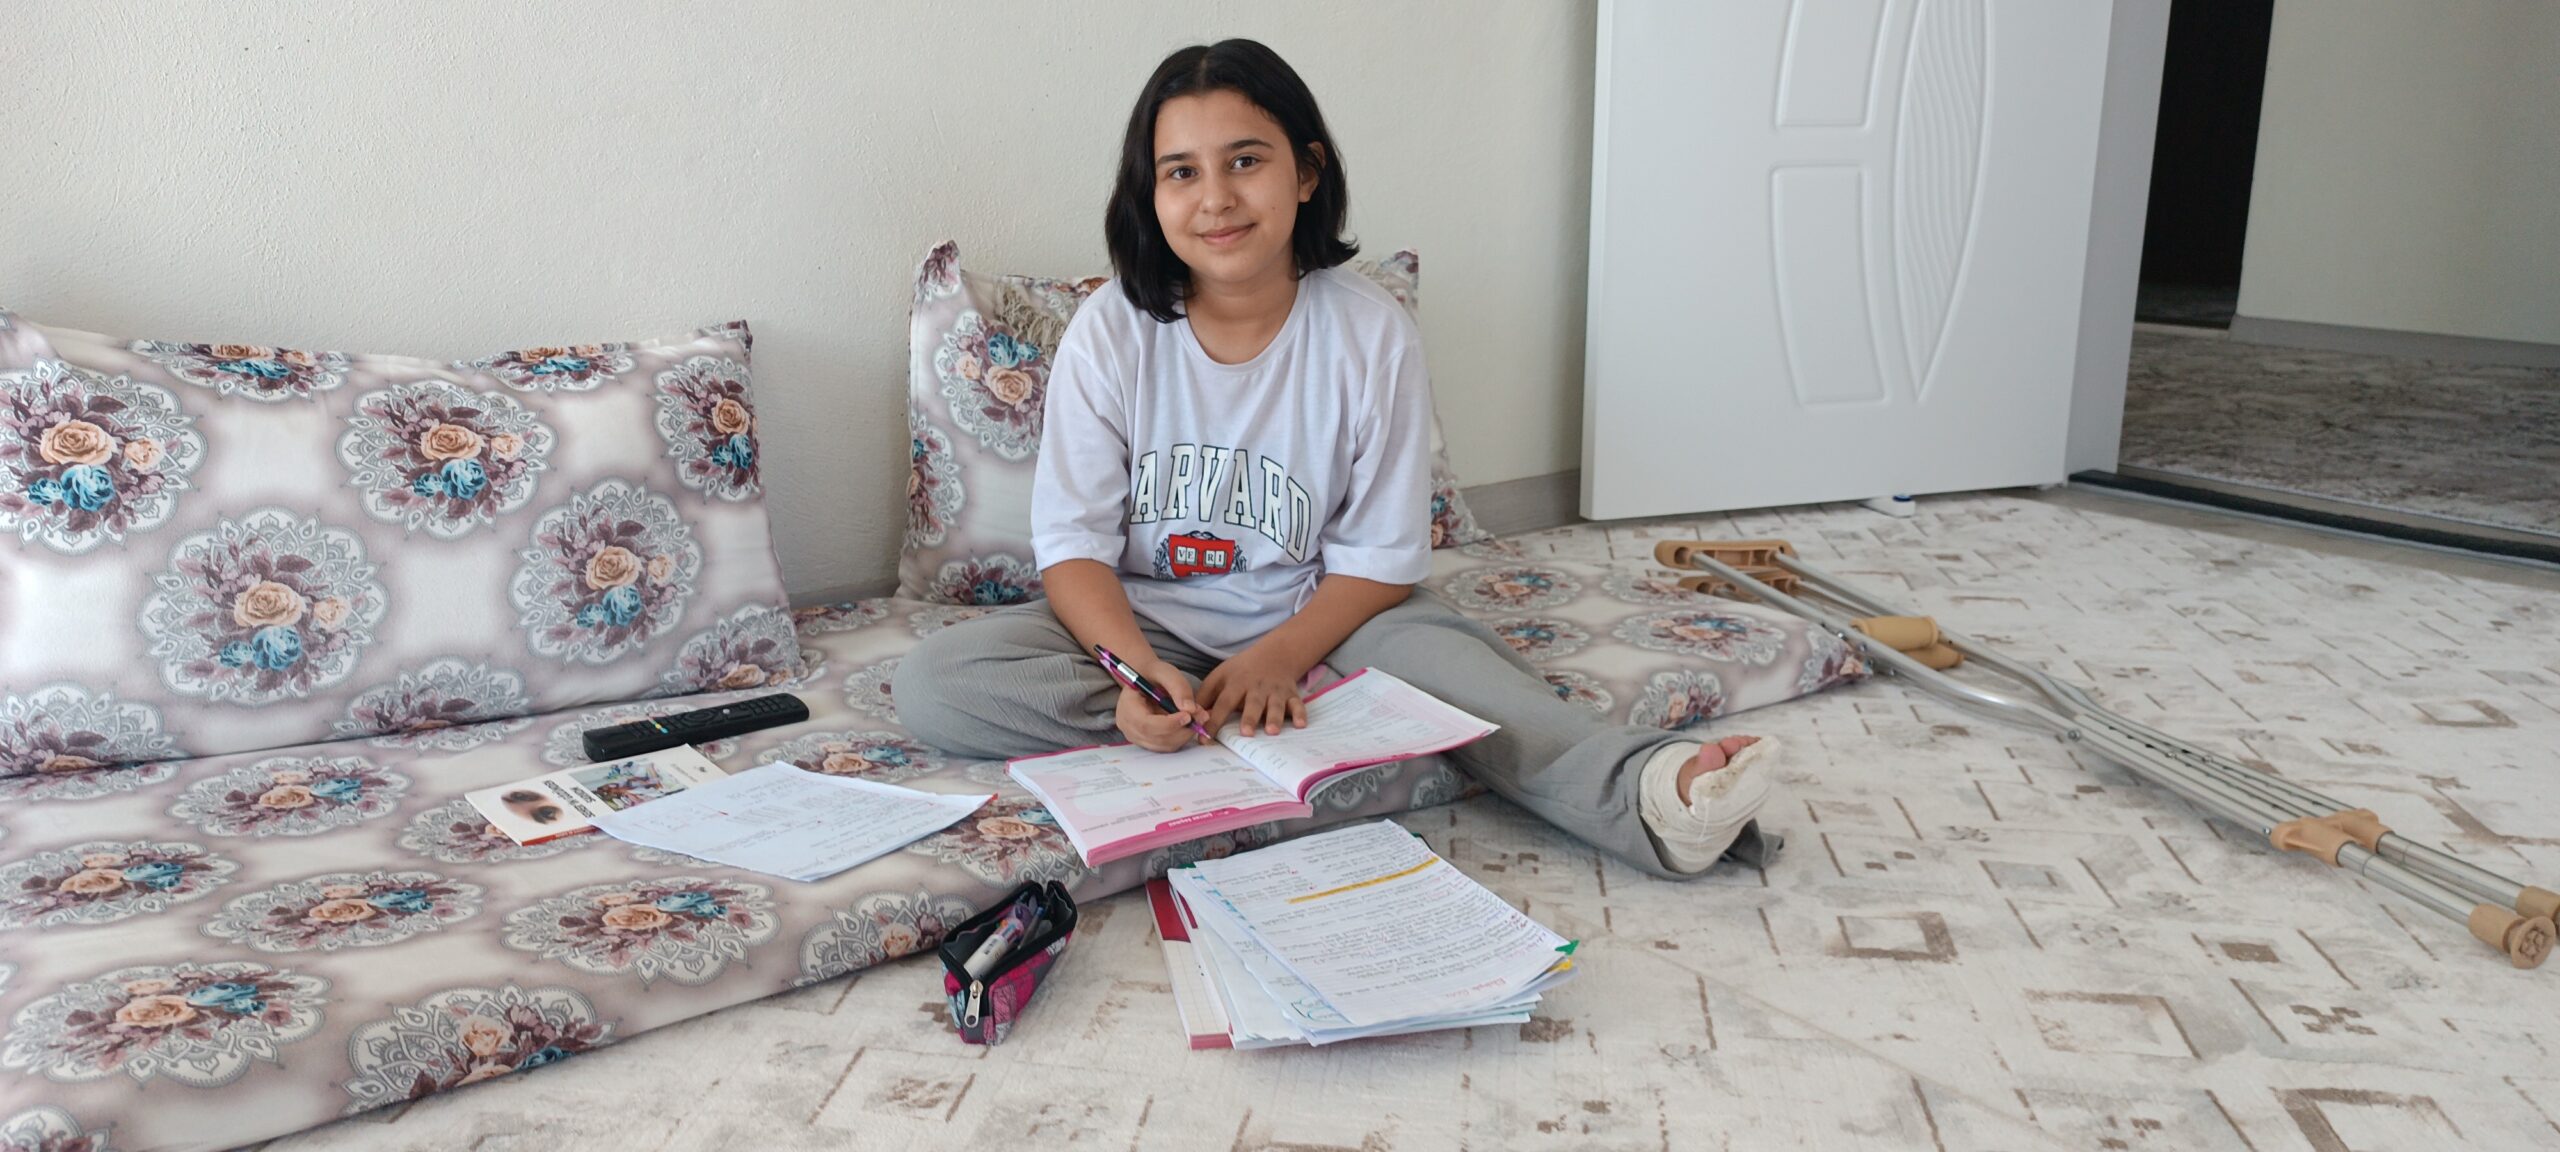 Kanseri yenen Seher,eğitime başlamak için mücadele ediyor